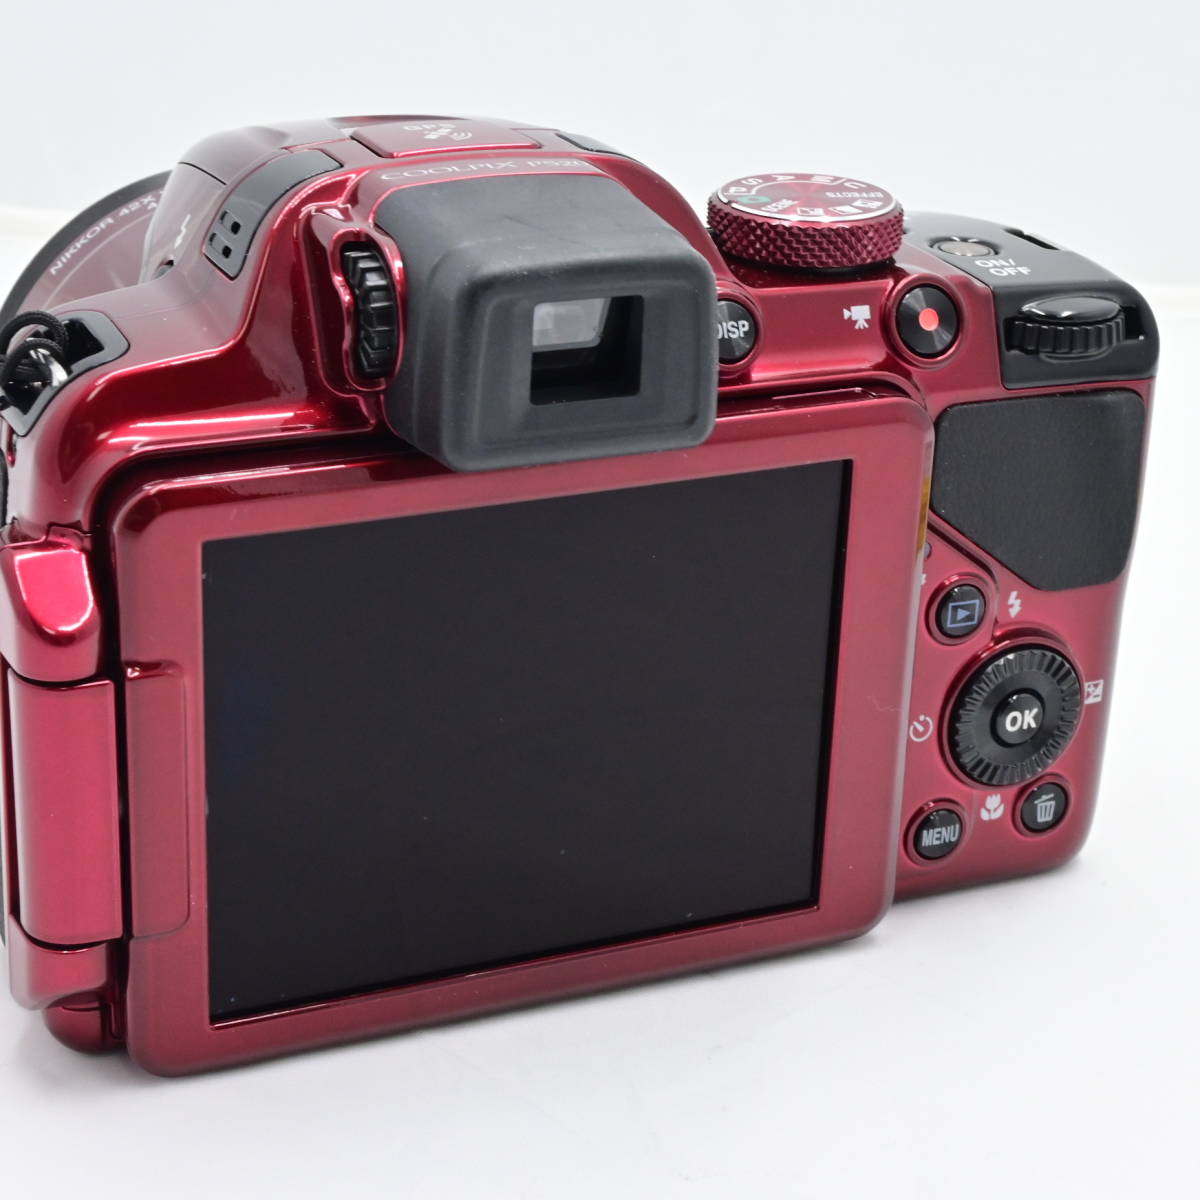 Nikon デジタルカメラ COOLPIX P520 光学42倍ズーム バリアングル液晶 レッド_画像3